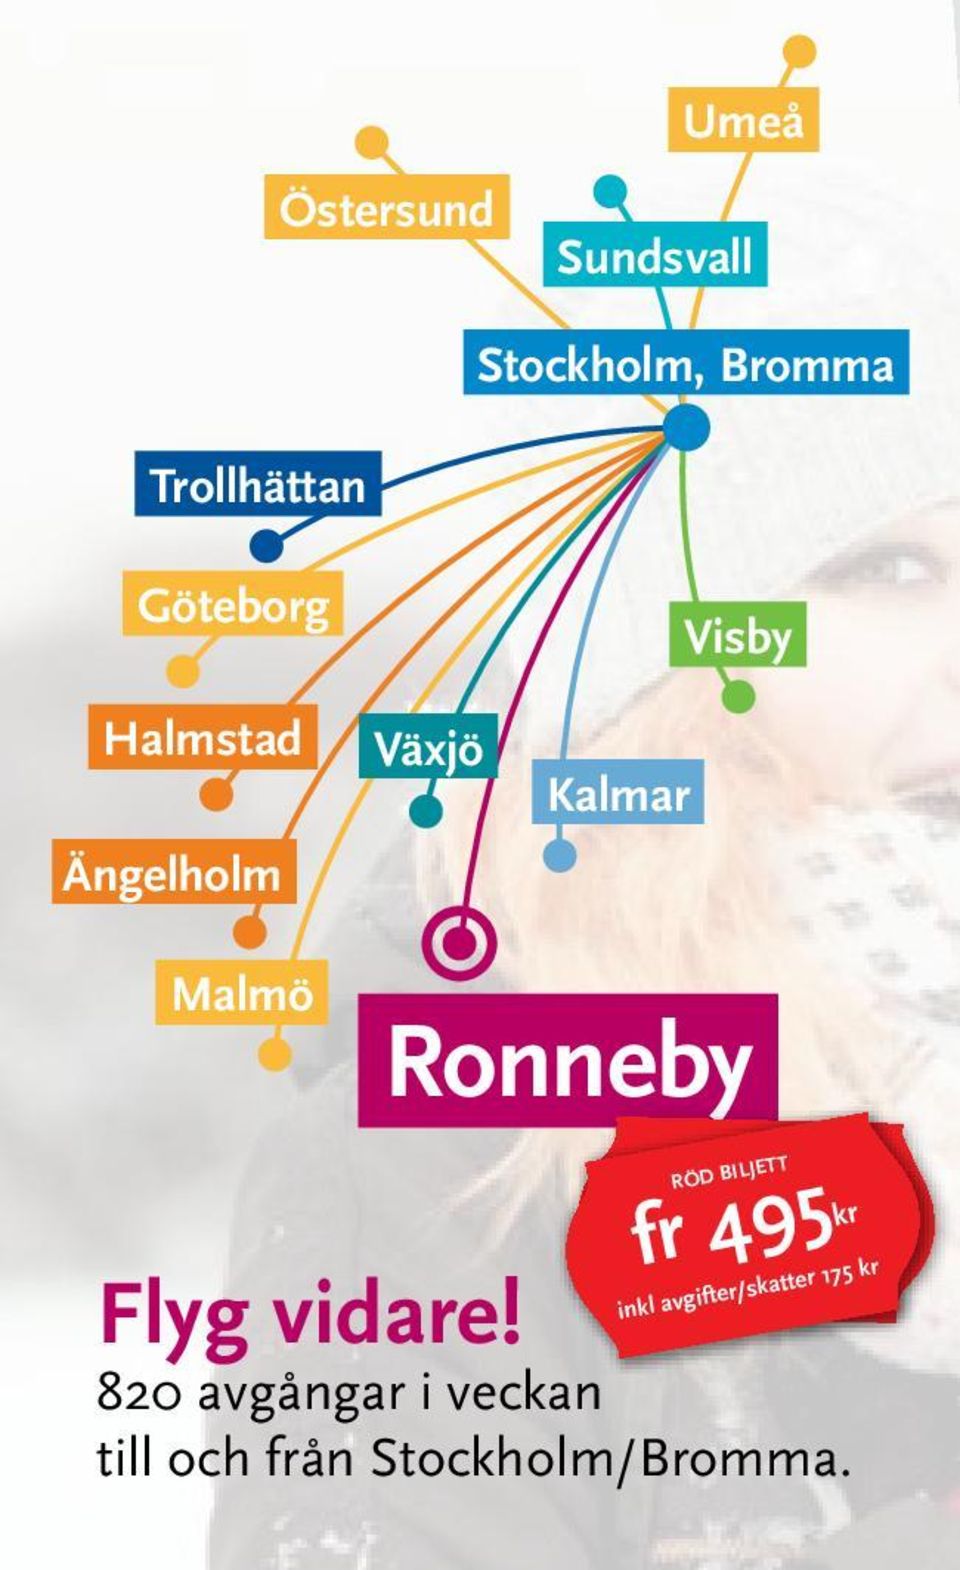 Kalmar Visby Malmö Ronneby fr 495kr RÖD BILJETT